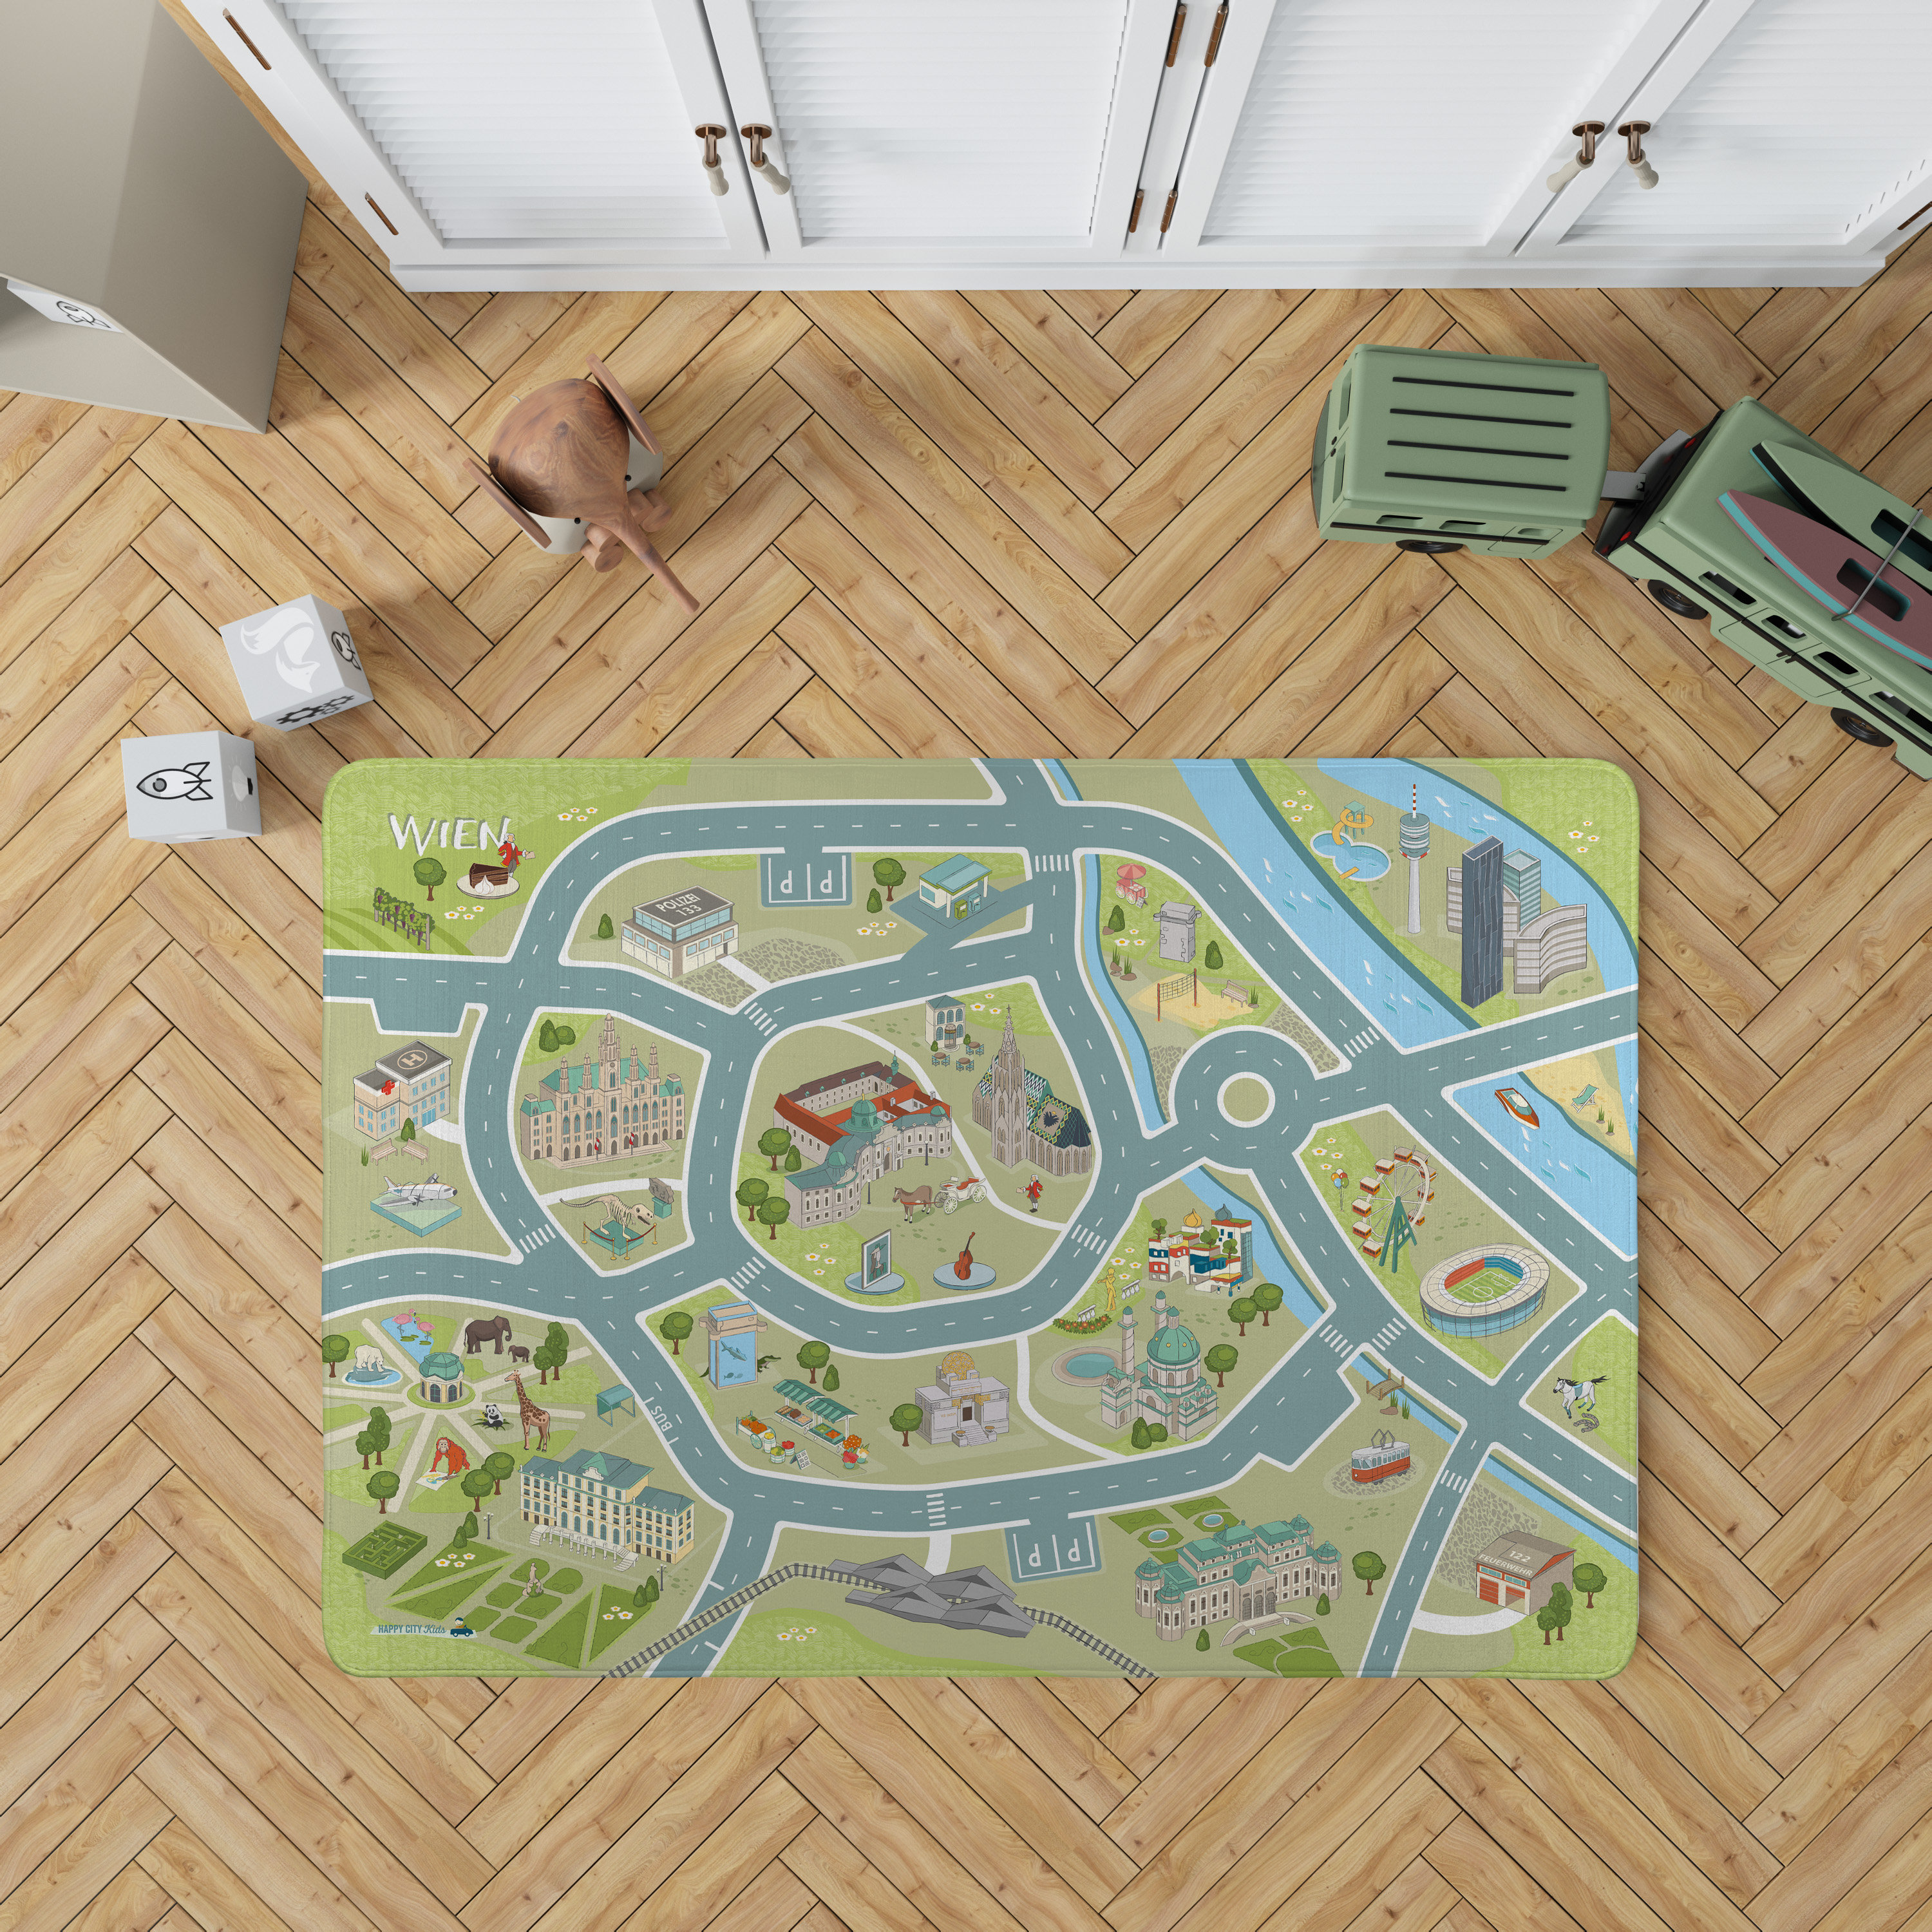 NEU: Spielteppich WIEN Samtweicher Straßen-teppich Auto-teppich Play Rug  Play Matte Von Happycitykids in 2 Größen -  Finland